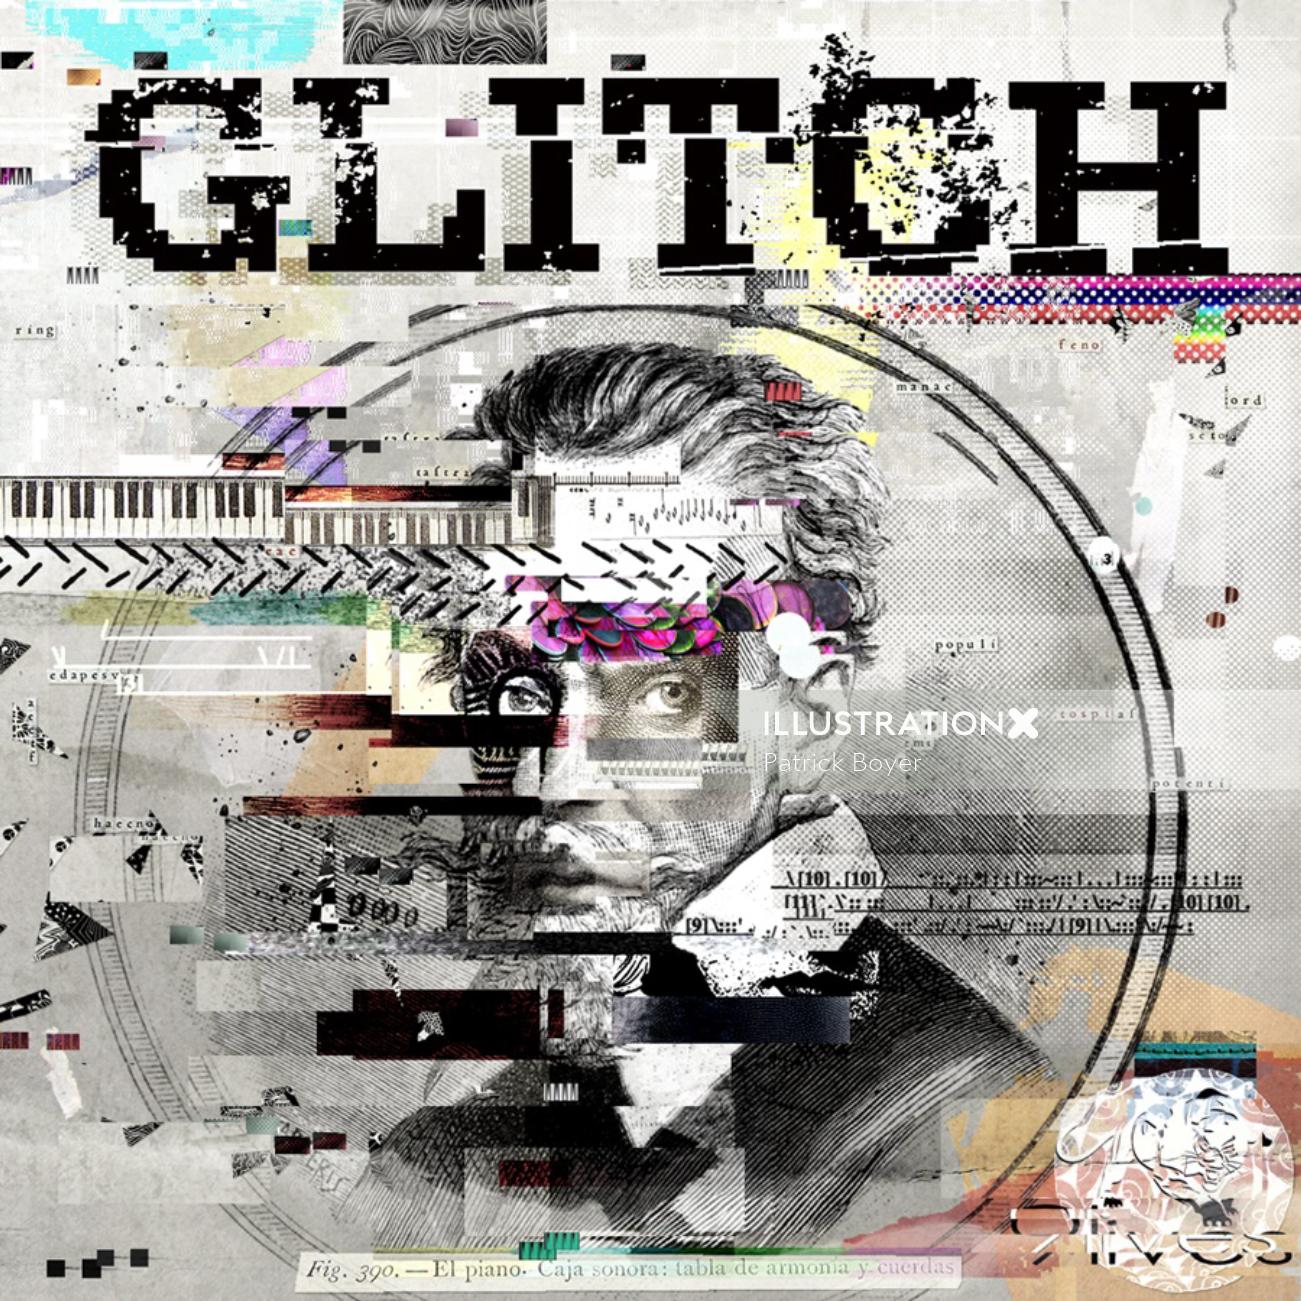 Illustration de la couverture Glitch par Patrick Boyer